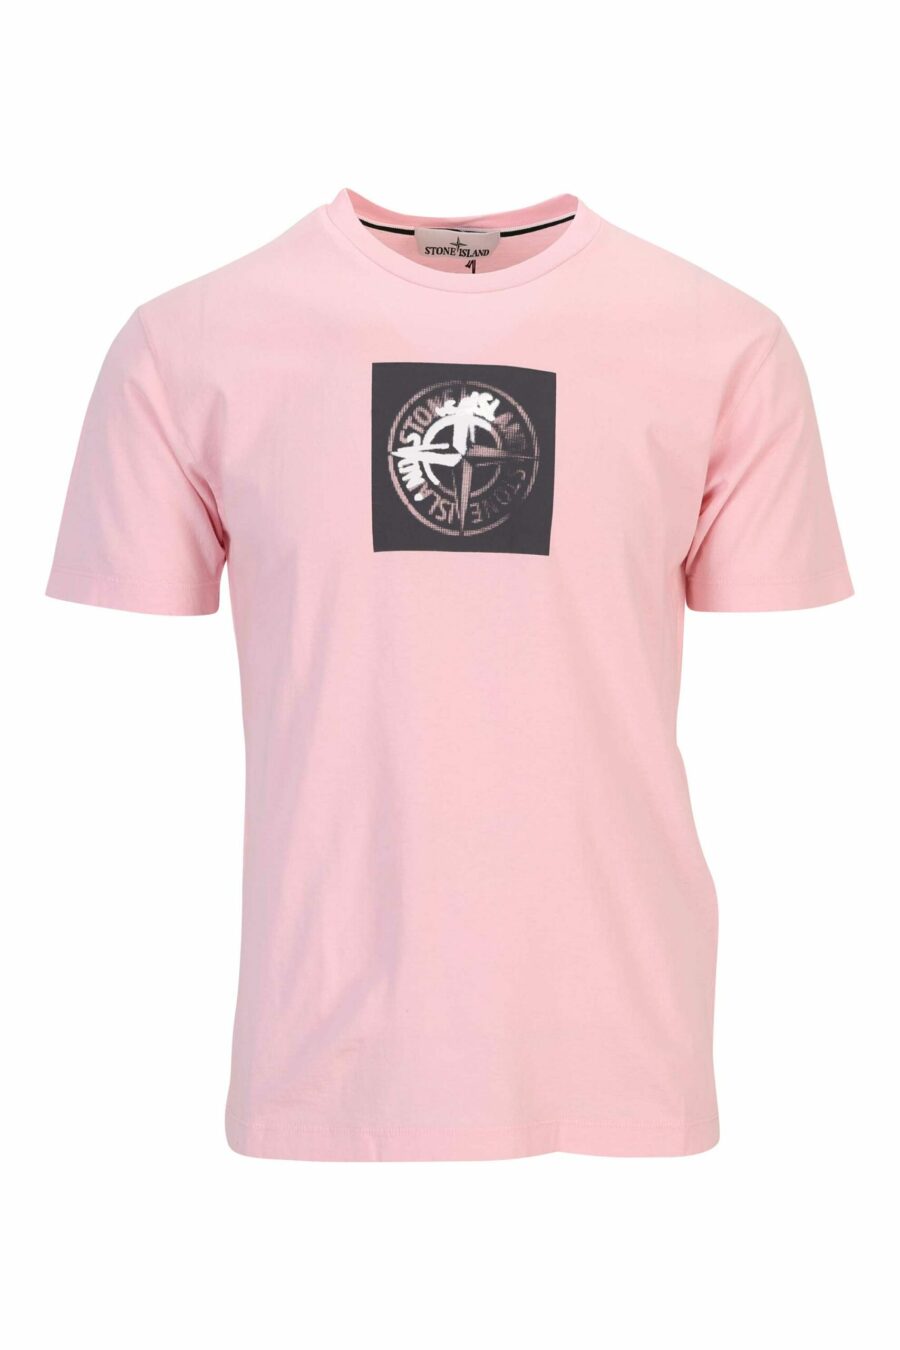 Camiseta rosa con estampado logo brújula centrado - 8052572903991 scaled